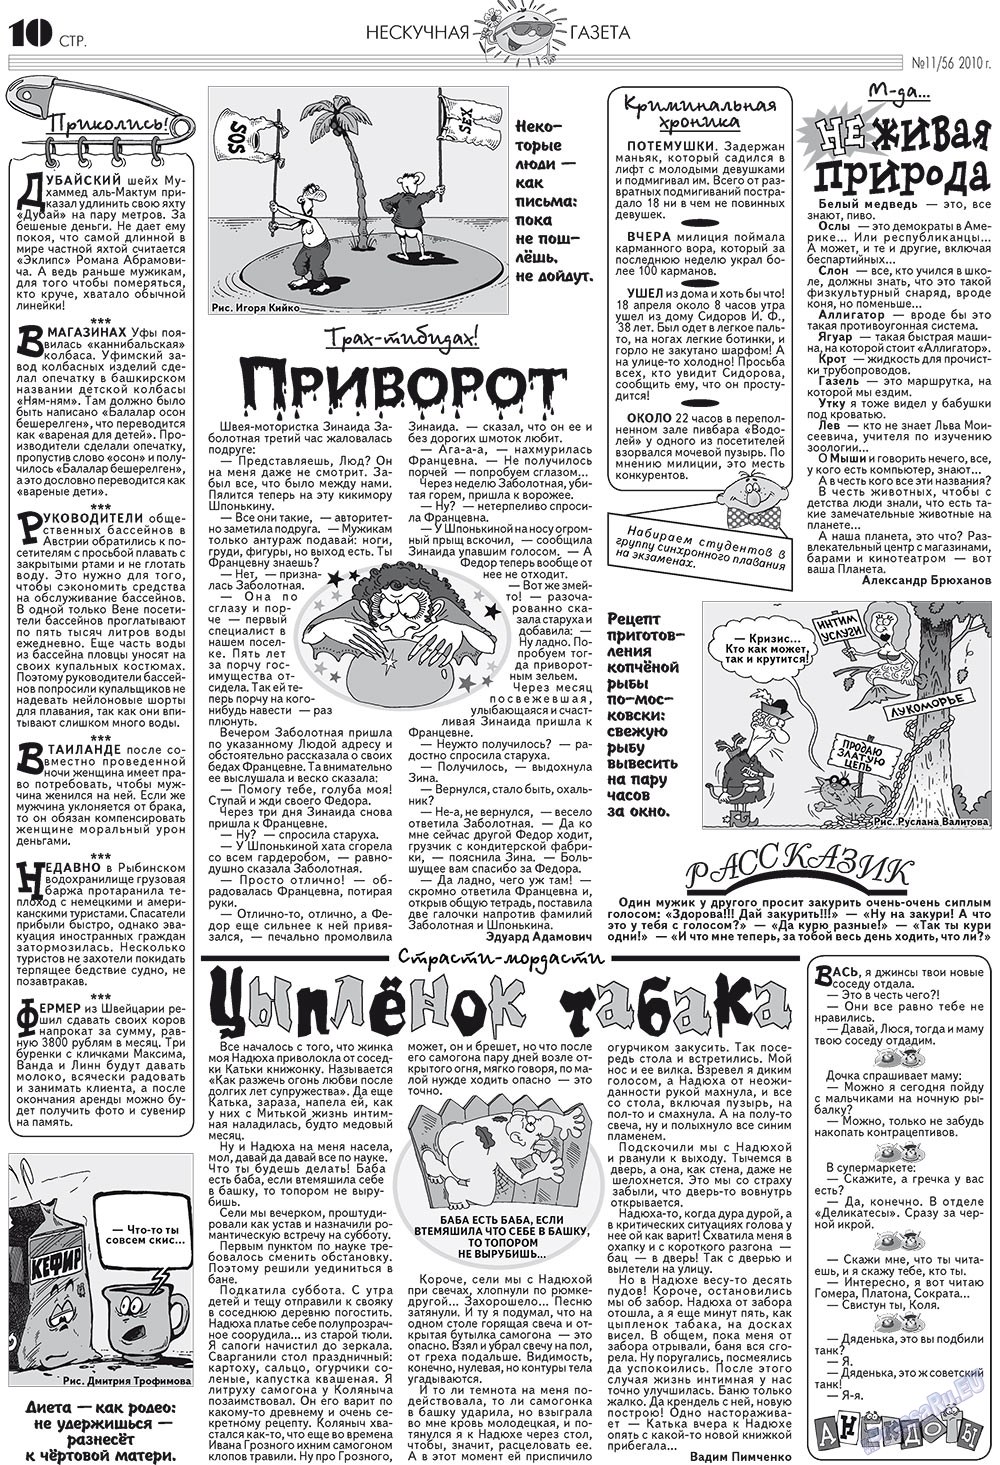 Нескучная газета (журнал). 2010 год, номер 11, стр. 10